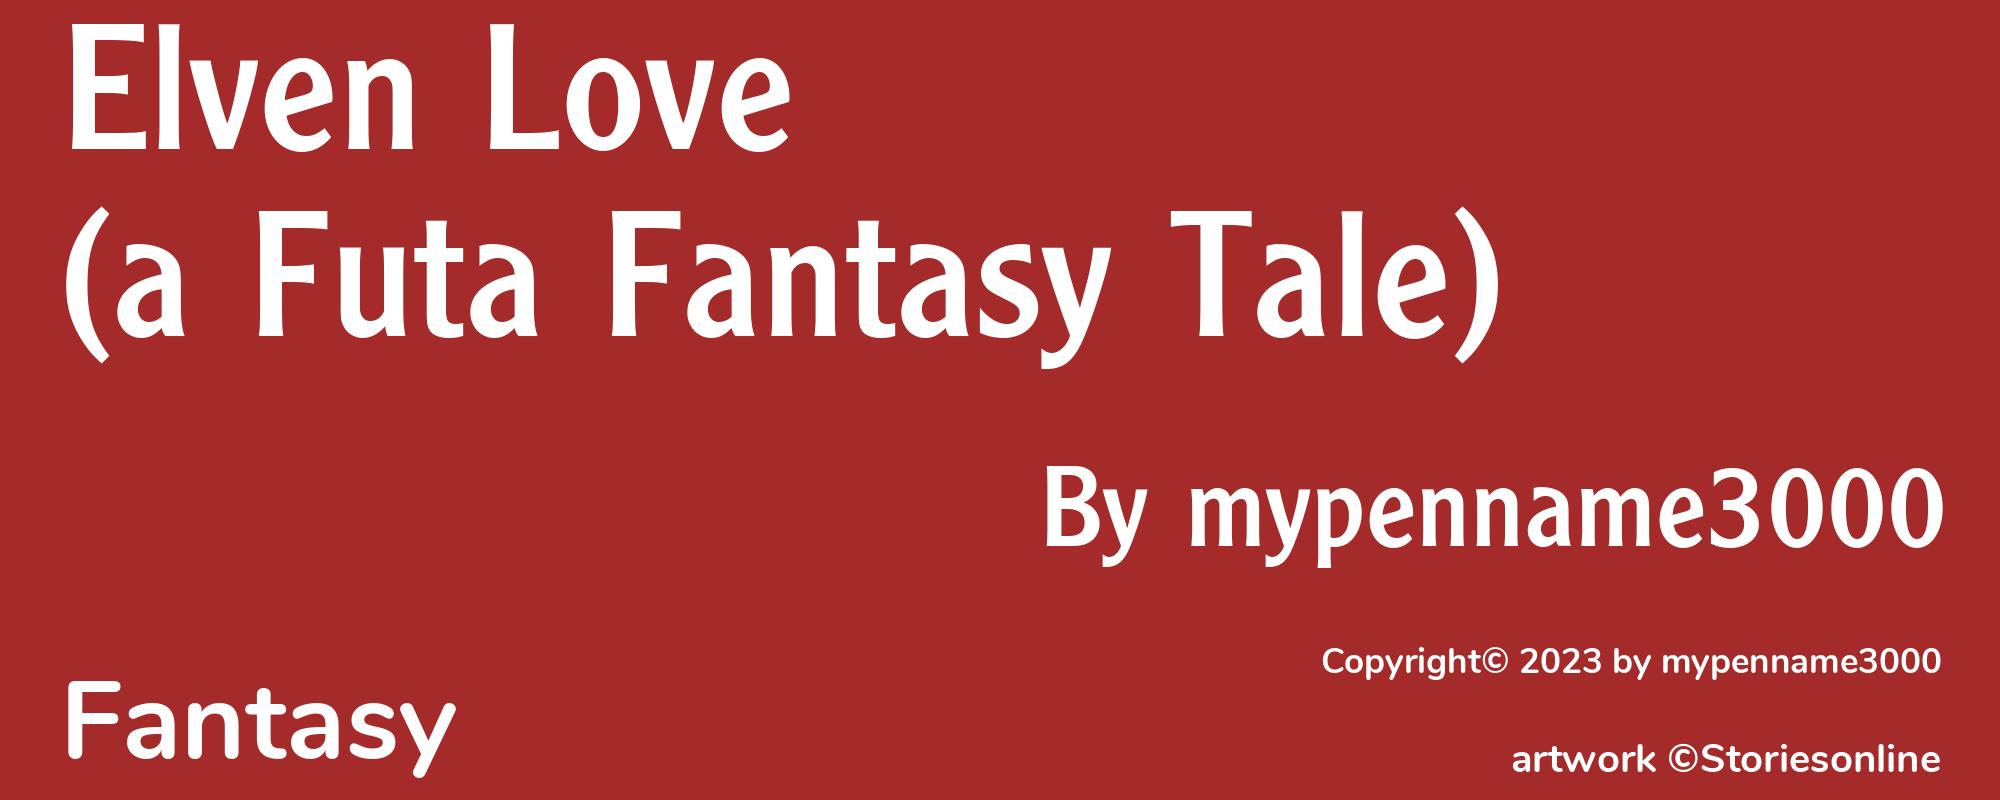 Elven Love (a Futa Fantasy Tale) - Cover